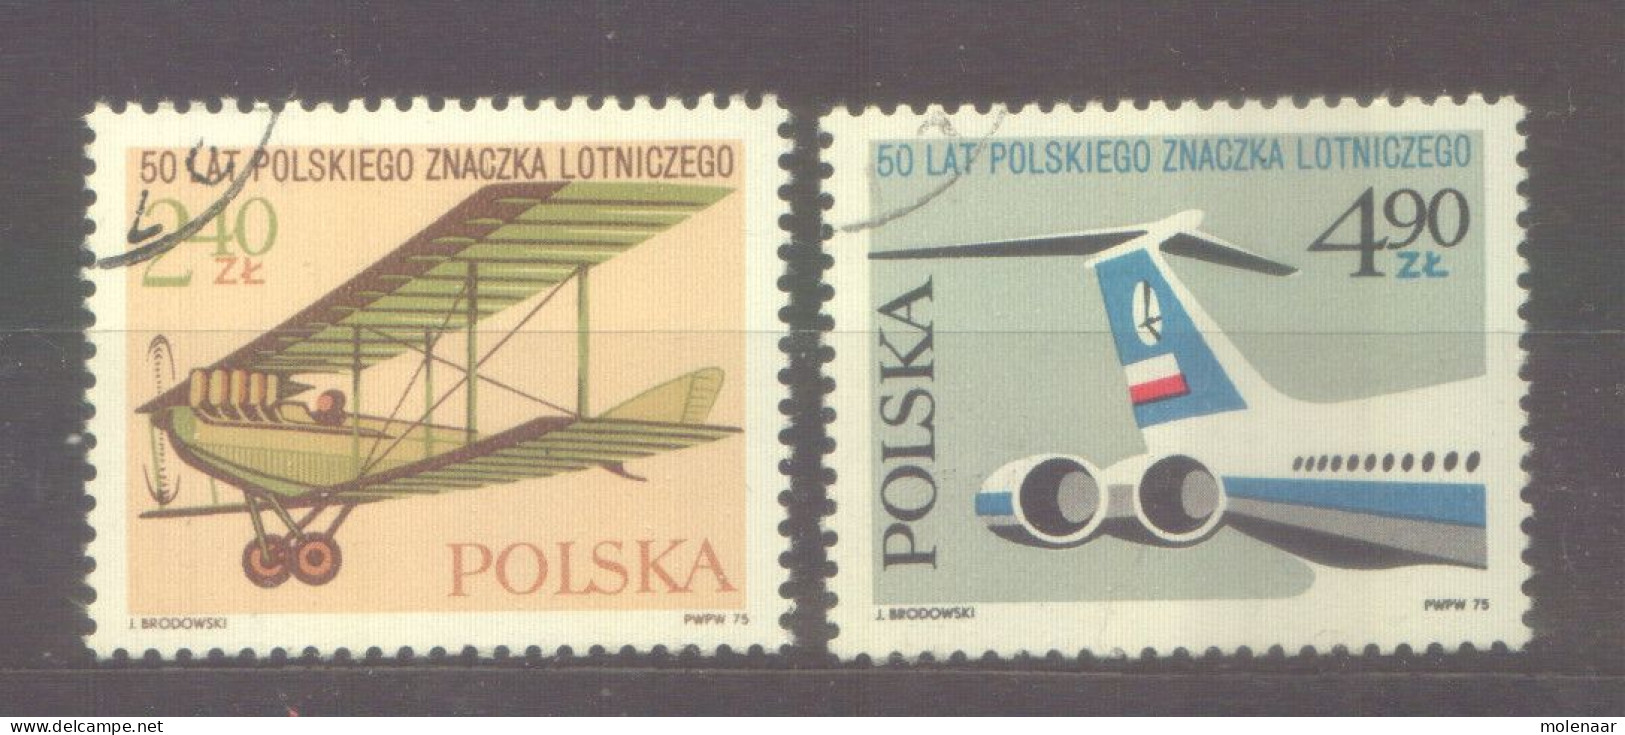 Postzegels > Europa > Polen > 1944-.... Republiek > 1971-80 > Gebruikt No. 2395-2396 (12126) - Usati